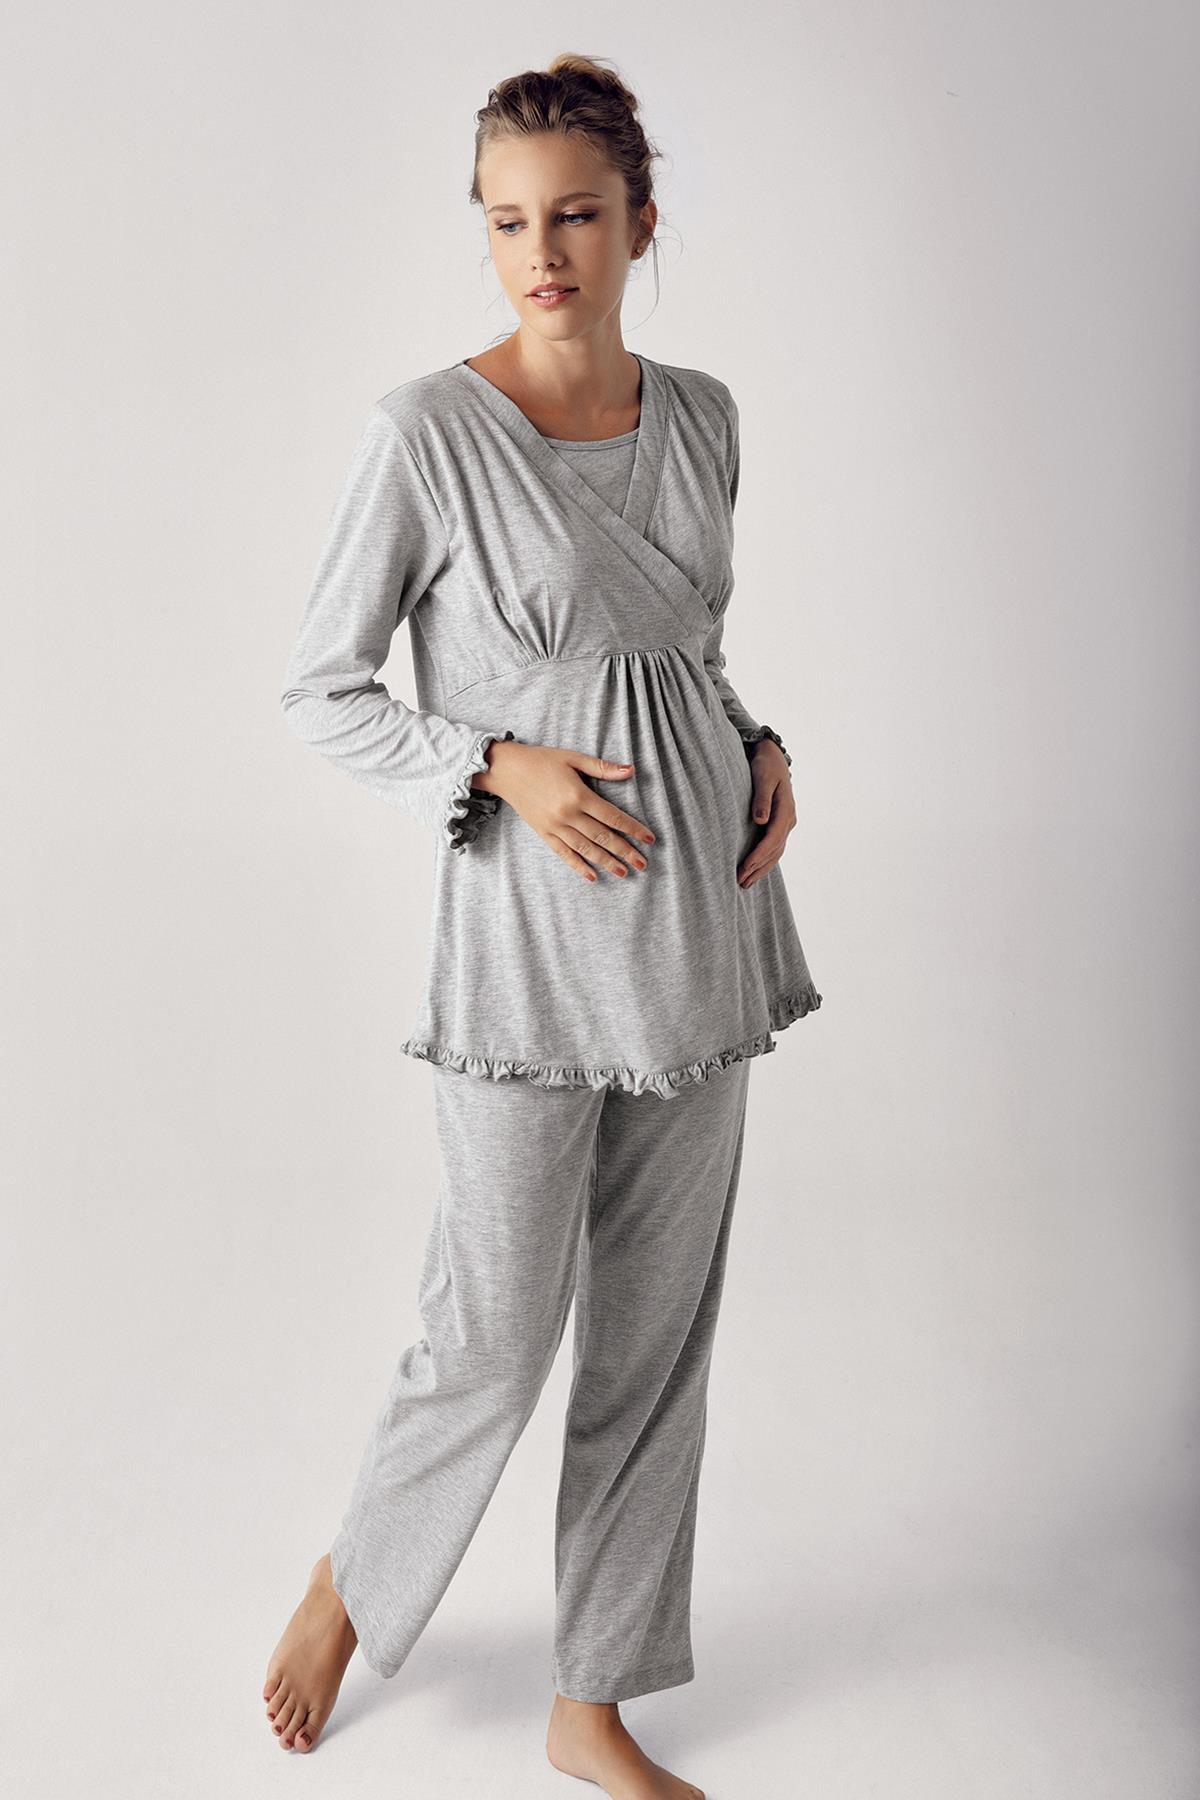 Kadın Uzun Kollu Esnek Pamuklu Kumaş Hamile Pijama Takımı 13201 - Artış Collection